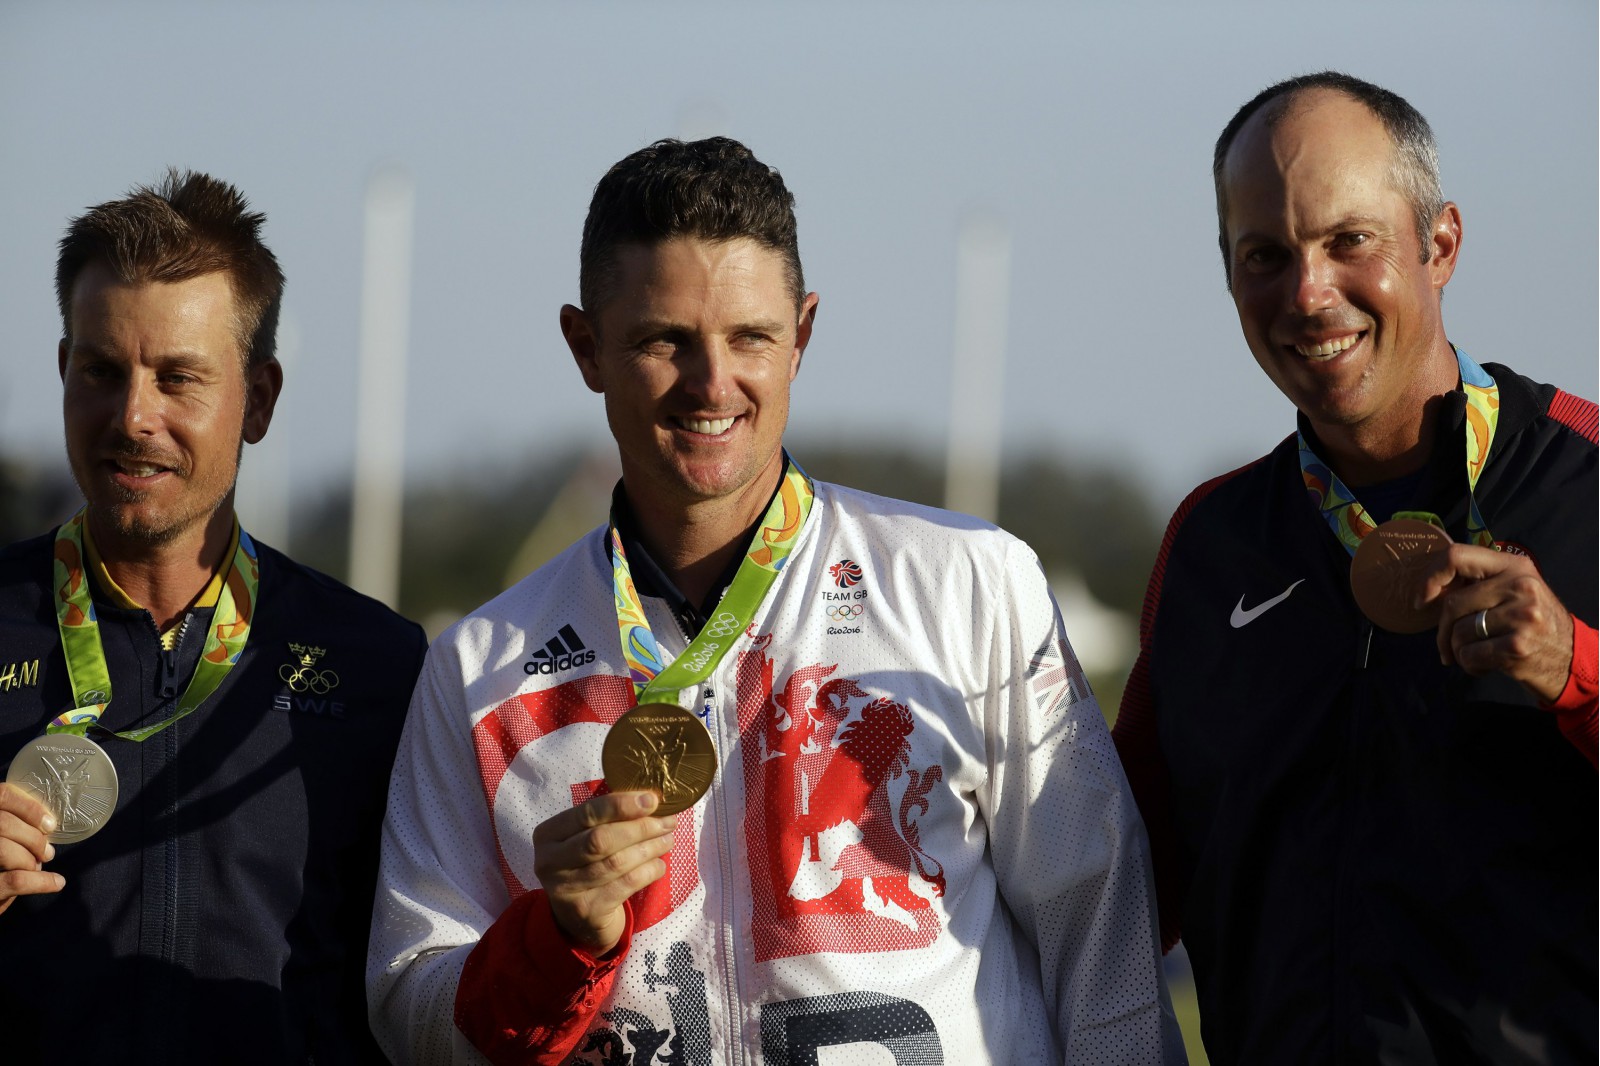 Matt Kuchar (bên phải) giành huy chương đồng vào Olympic 2016 - kỳ sự kiện đánh dấu cột mốc golf quay trở lại đấu trường Olympic sau 112 năm.